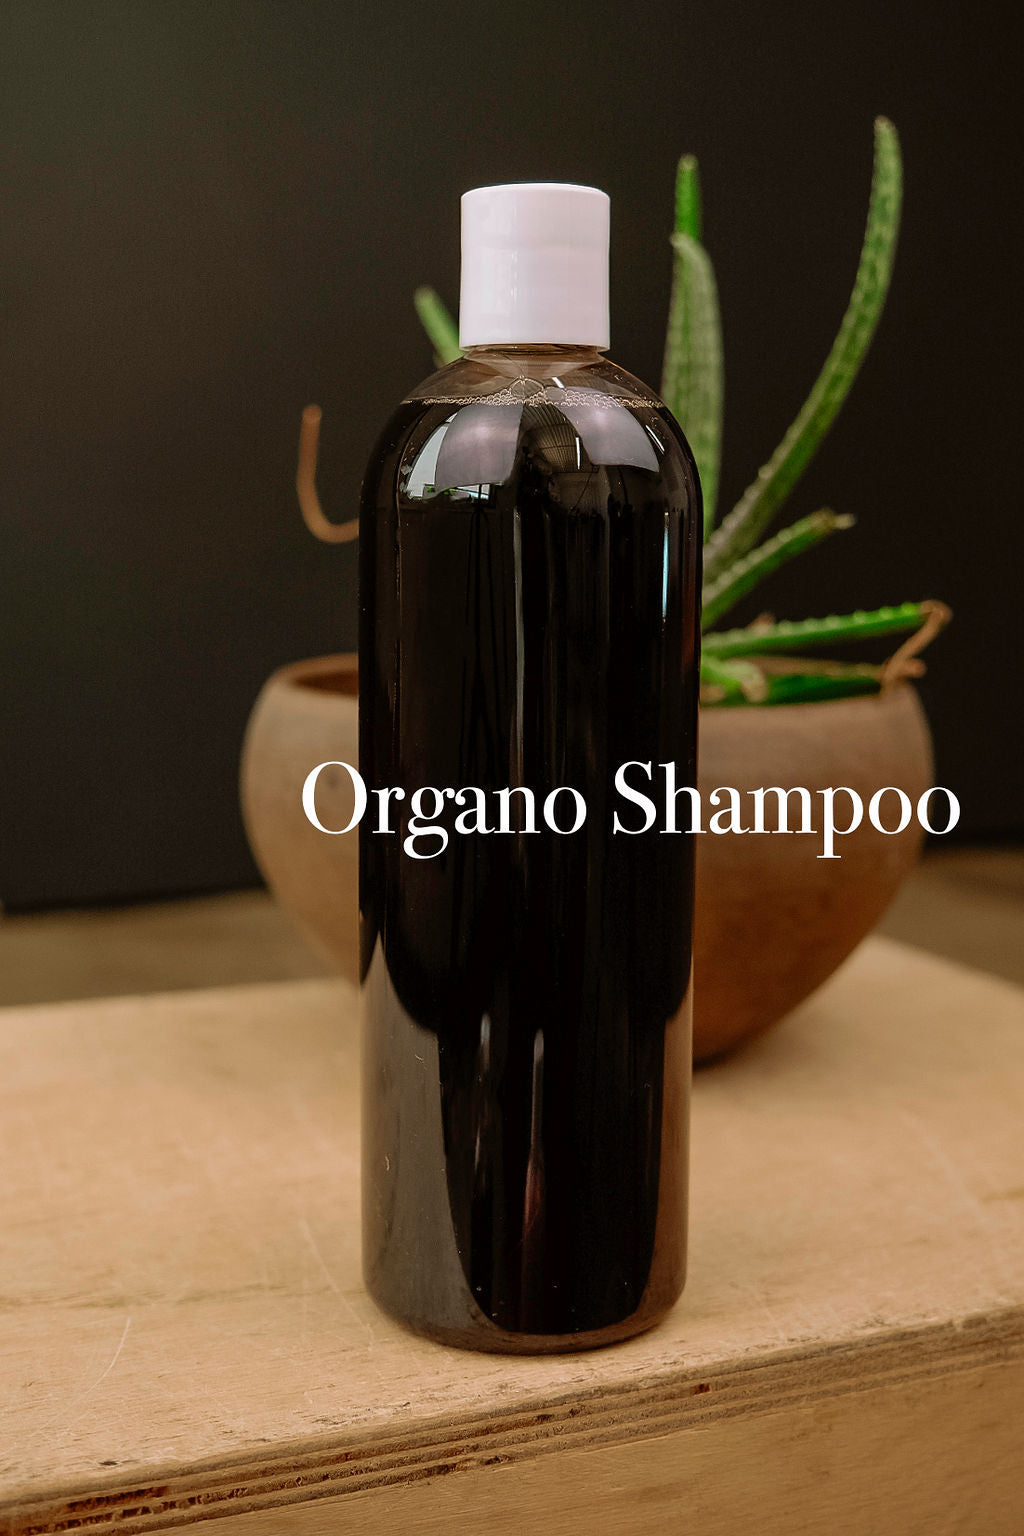 Organo Shampoo